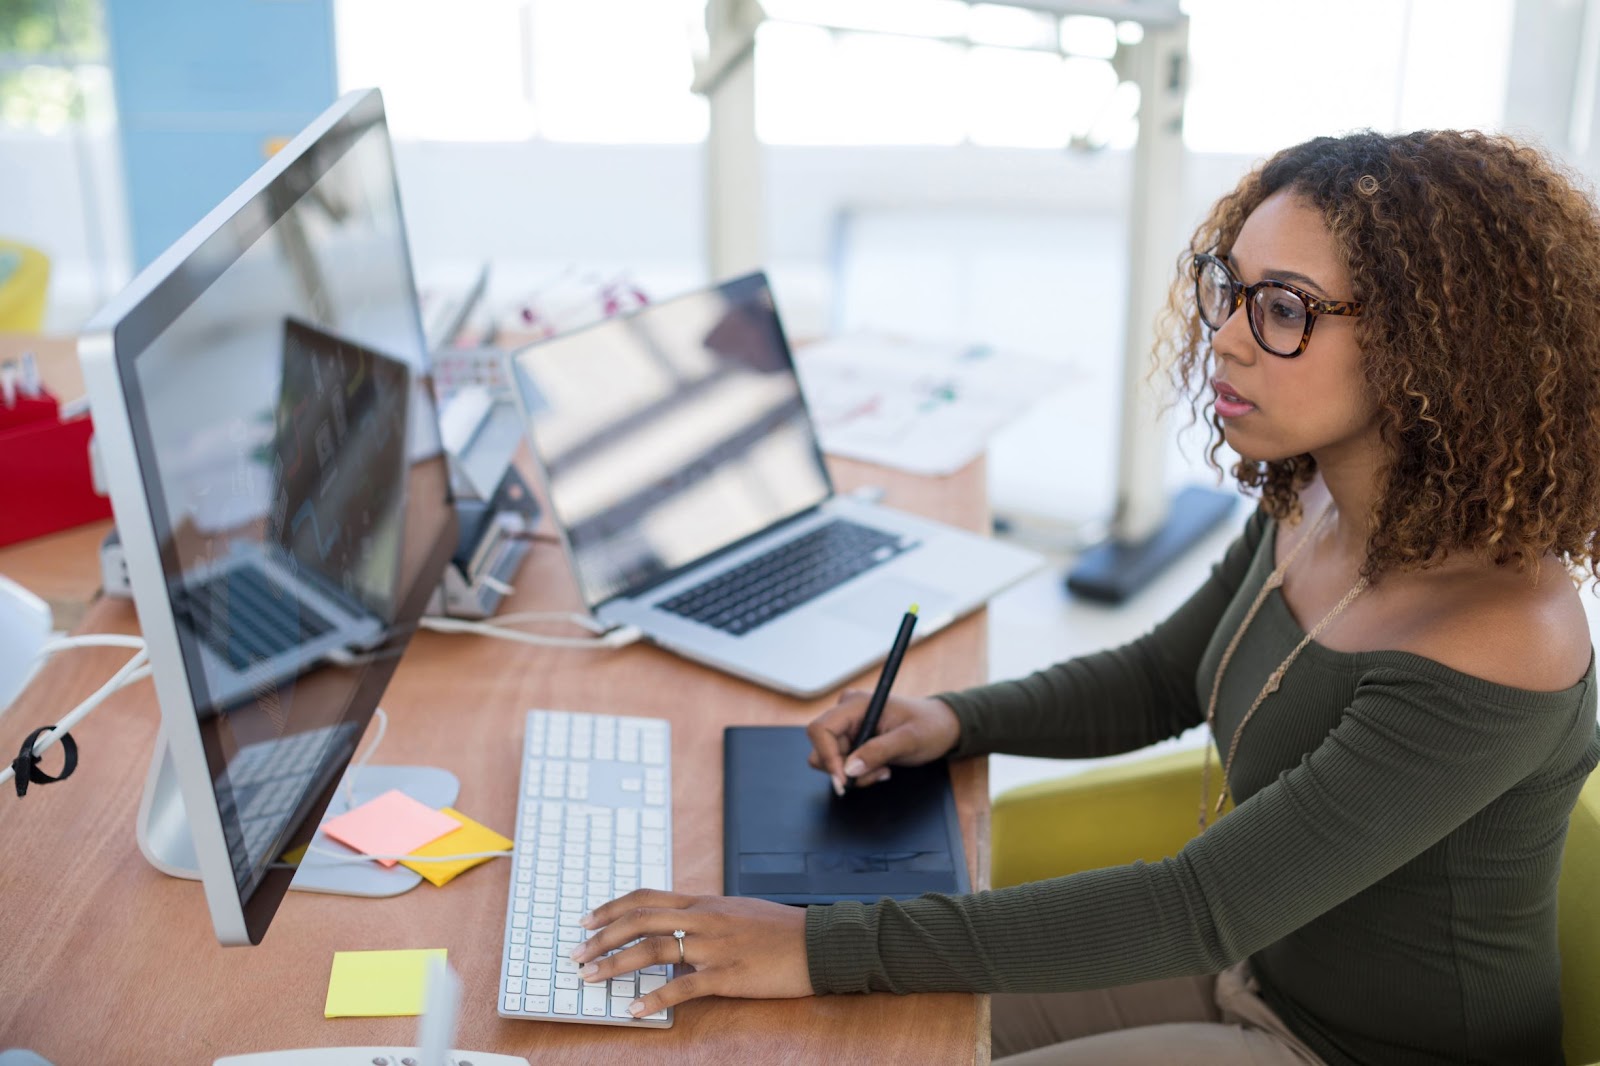 Imagem de uma mulher negra, em frente a uma tela de computador, que visa ilustrar a qualidade do trabalho em conjunto com os serviços de armazenamento em nuvem